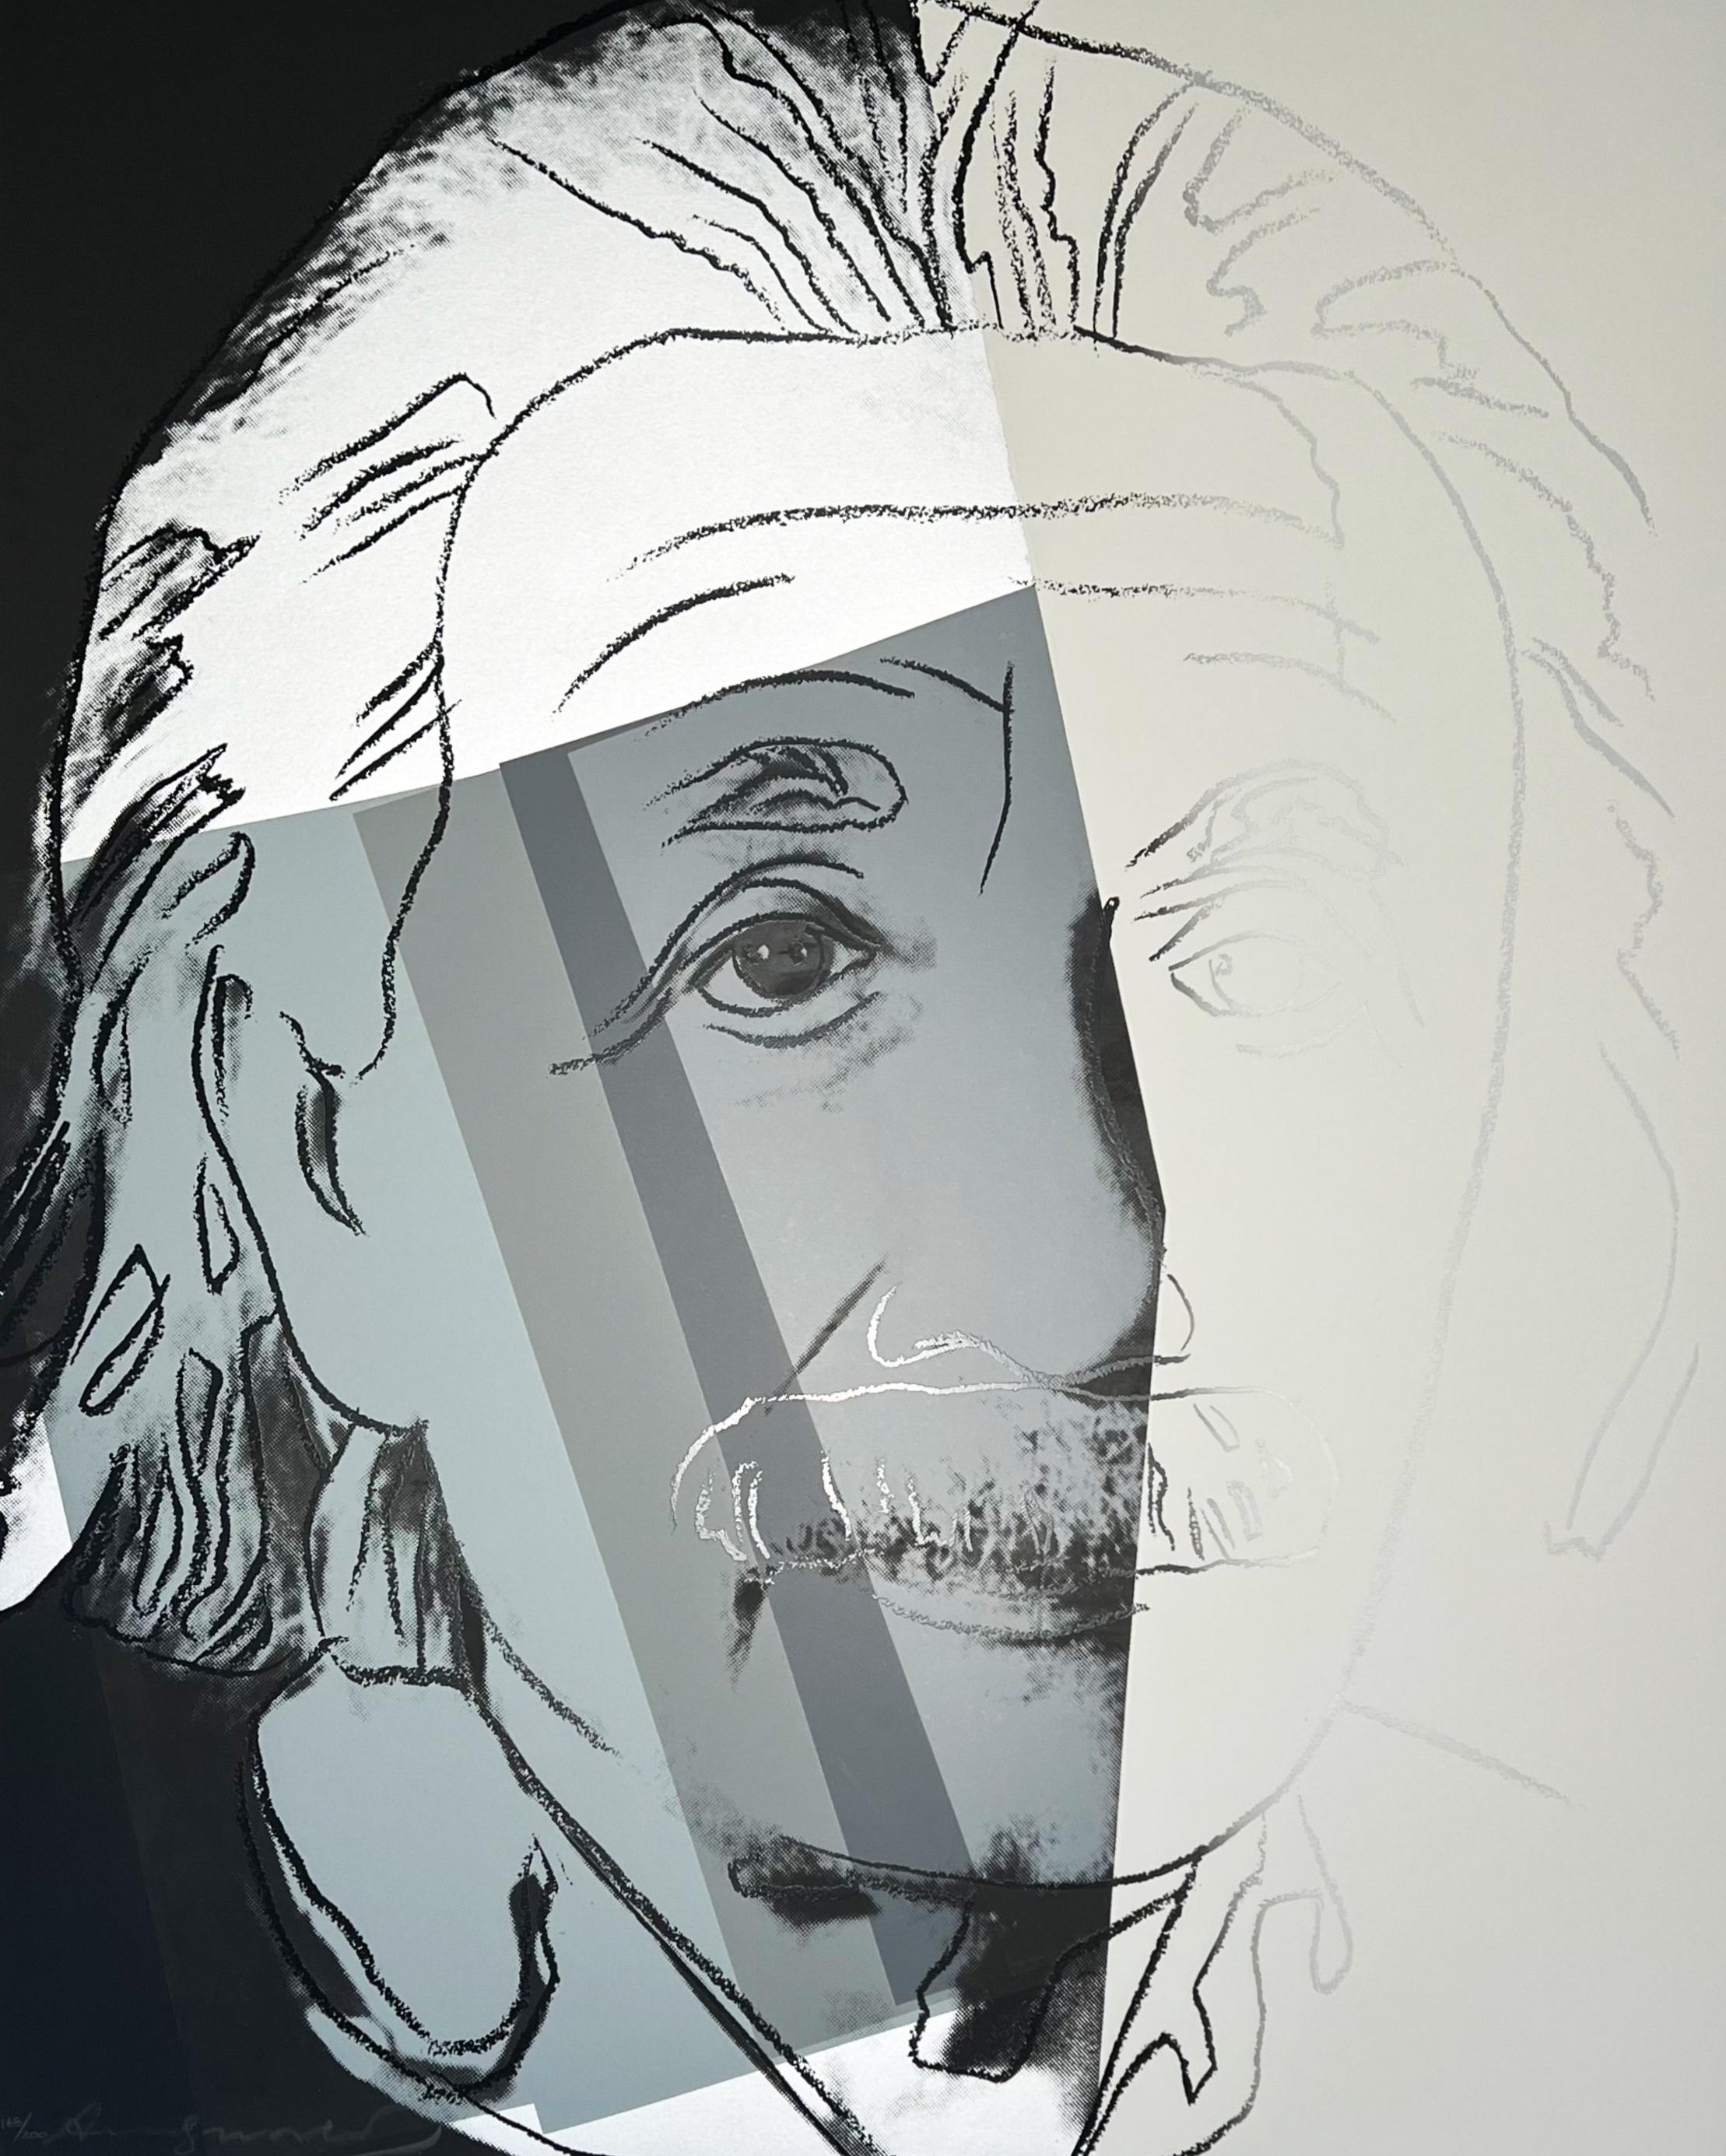 Andy Warhol Portrait Print - Albert Einstein, from Ten Portraits of Jews of the Twentieth Century